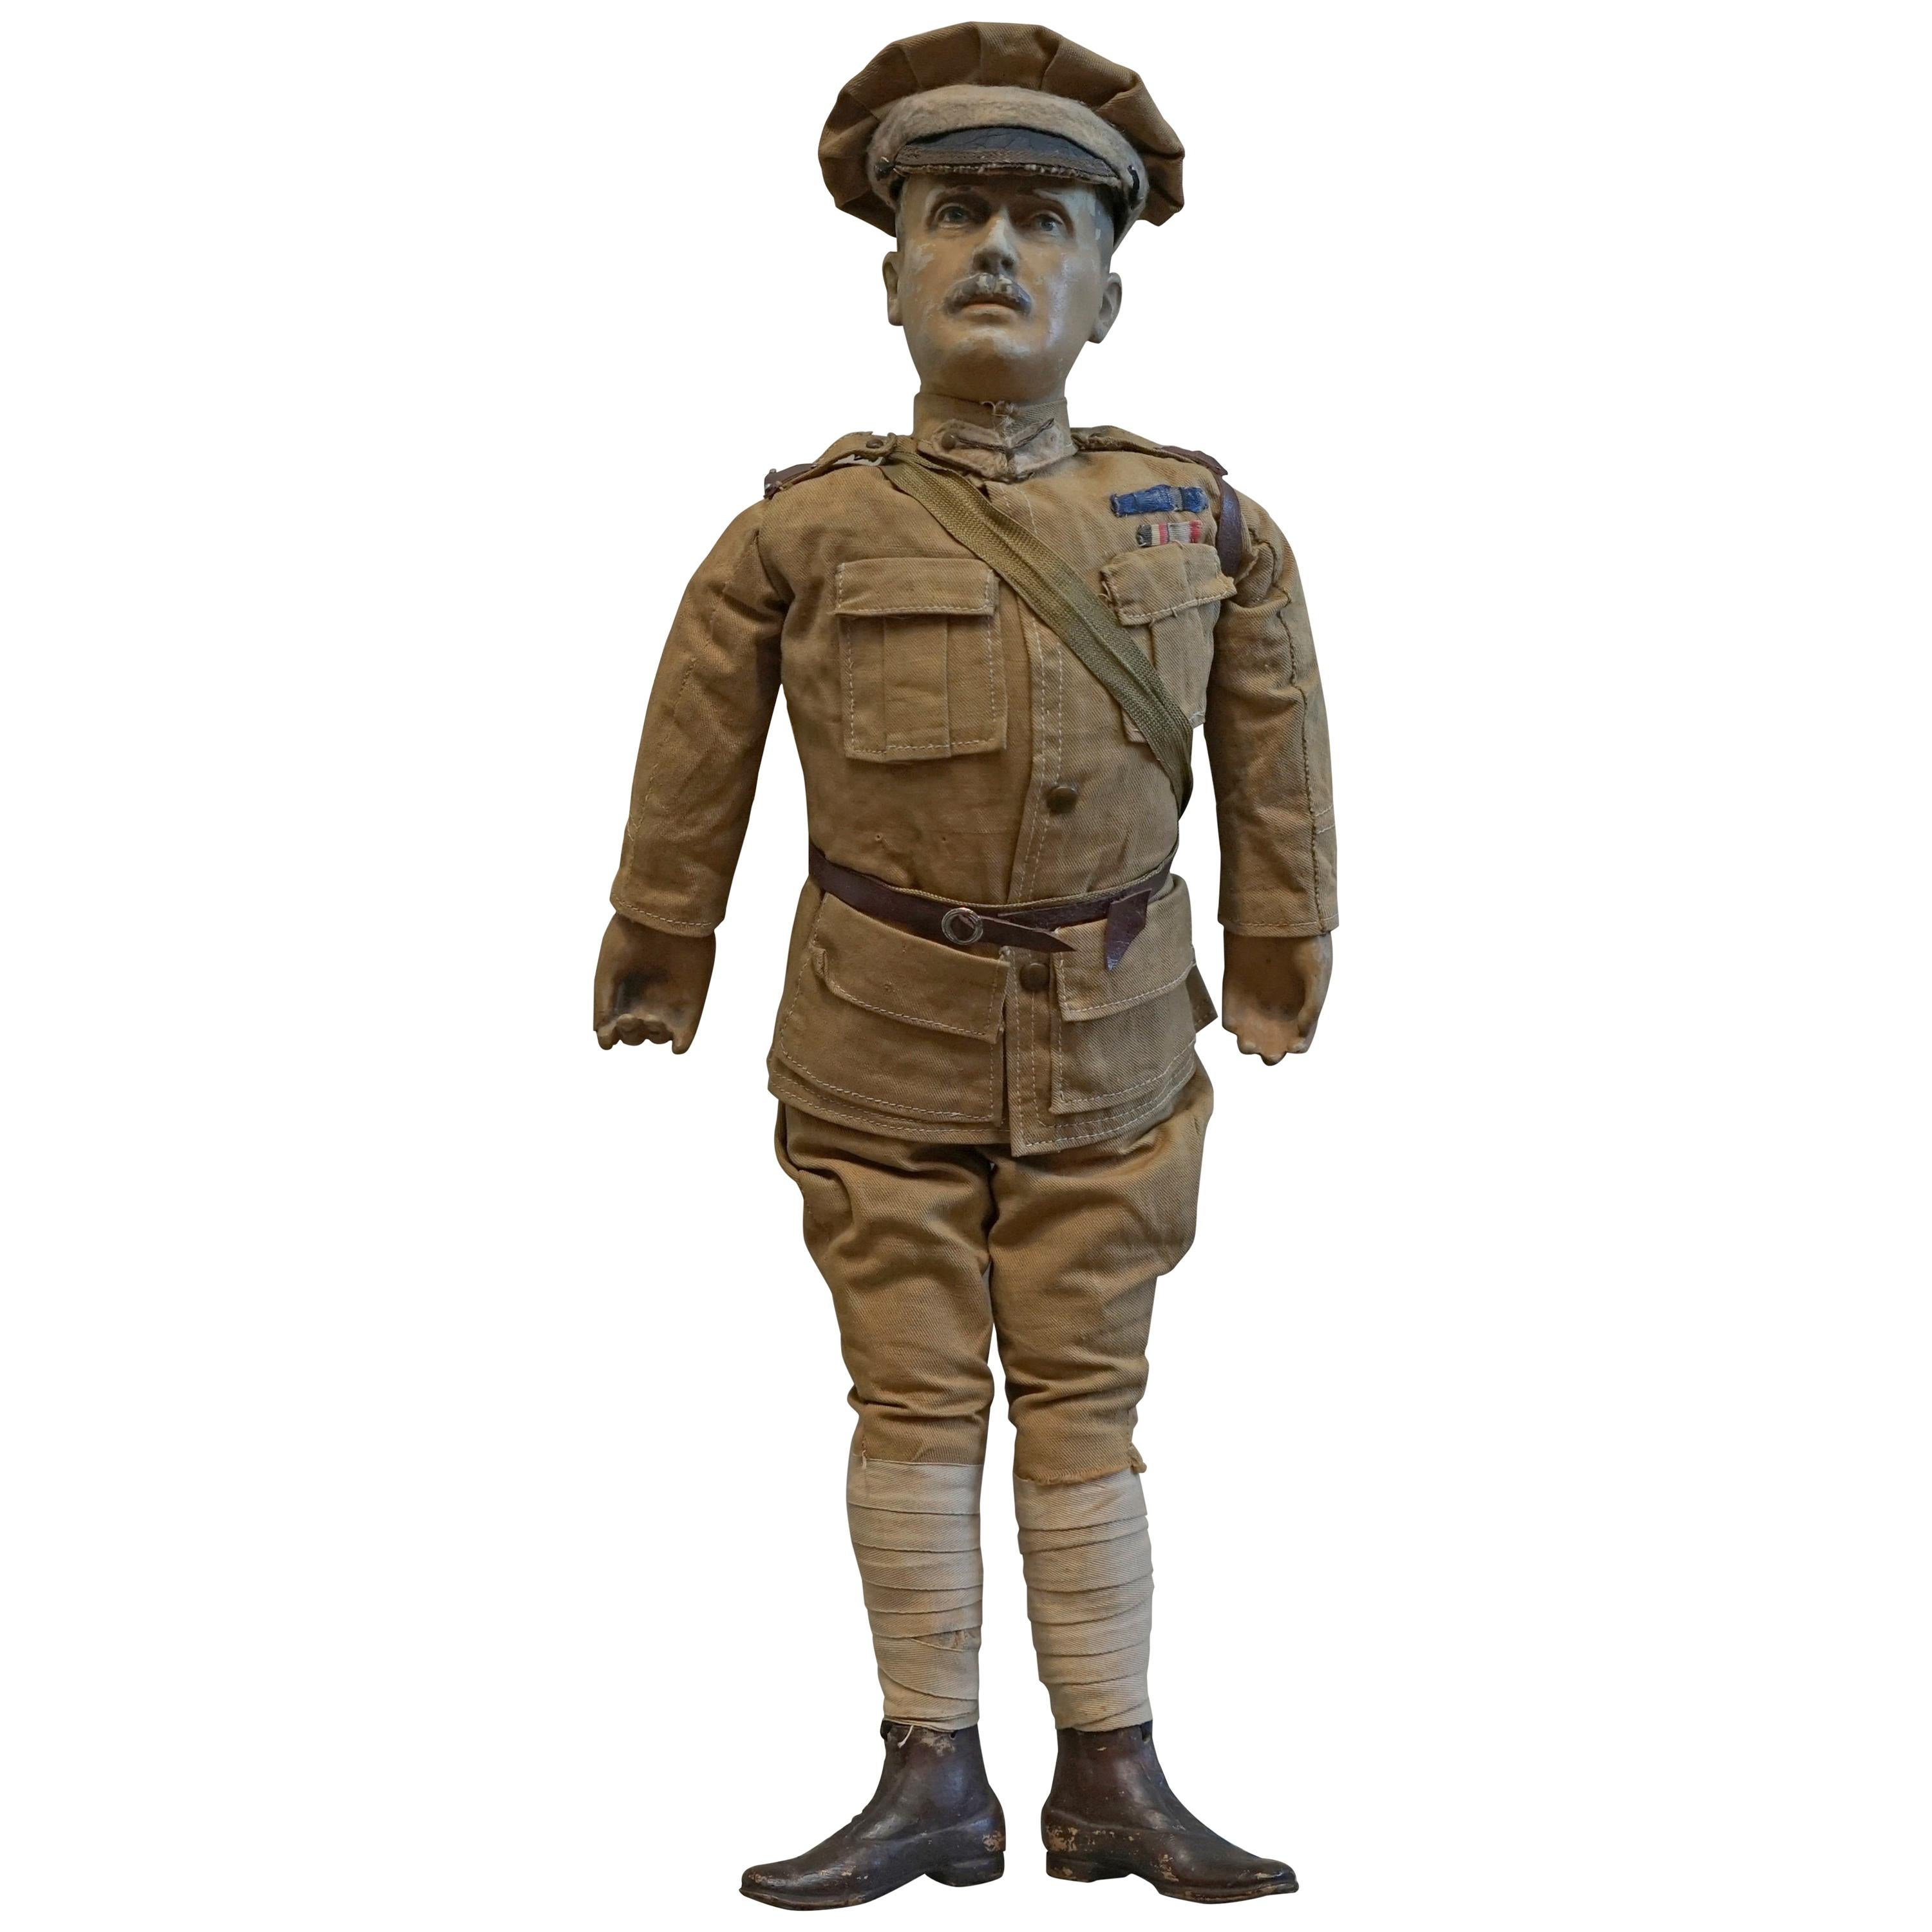 Très rare poupée de propagande patriotique britannique 1898-1914 de Lord Horatio Kitchener